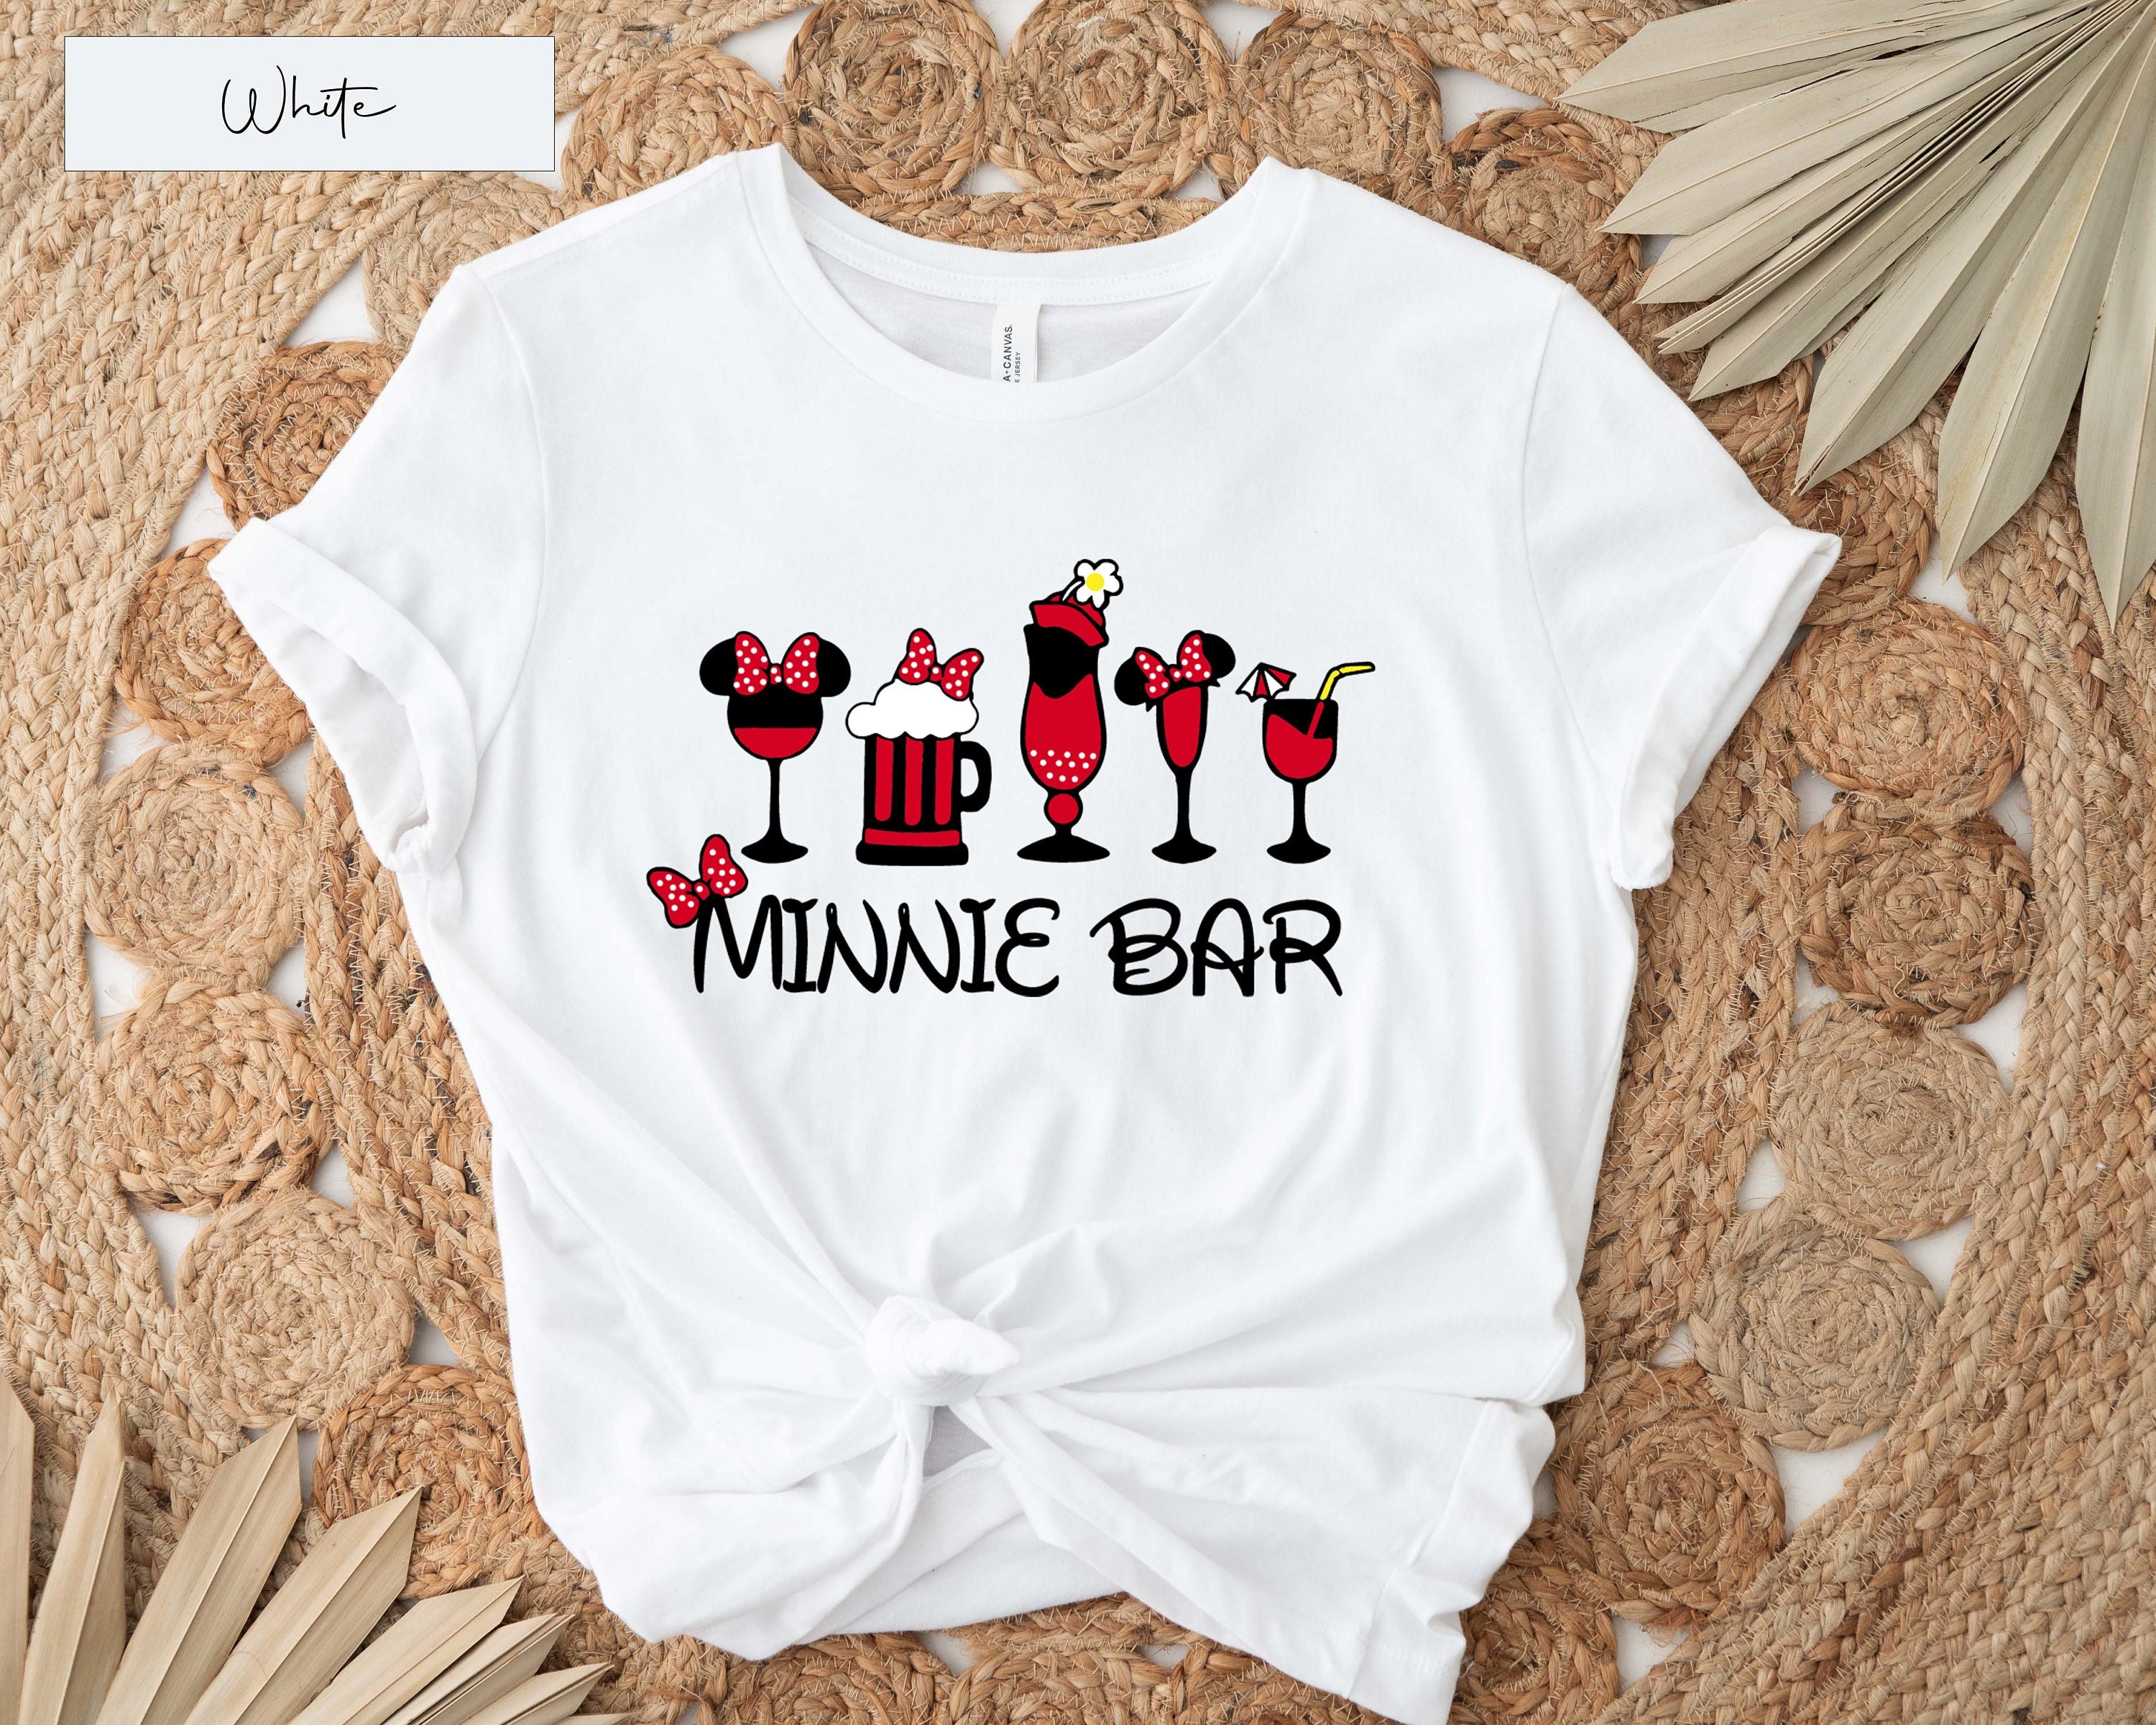 Discover Minnie Bar T-Shirt